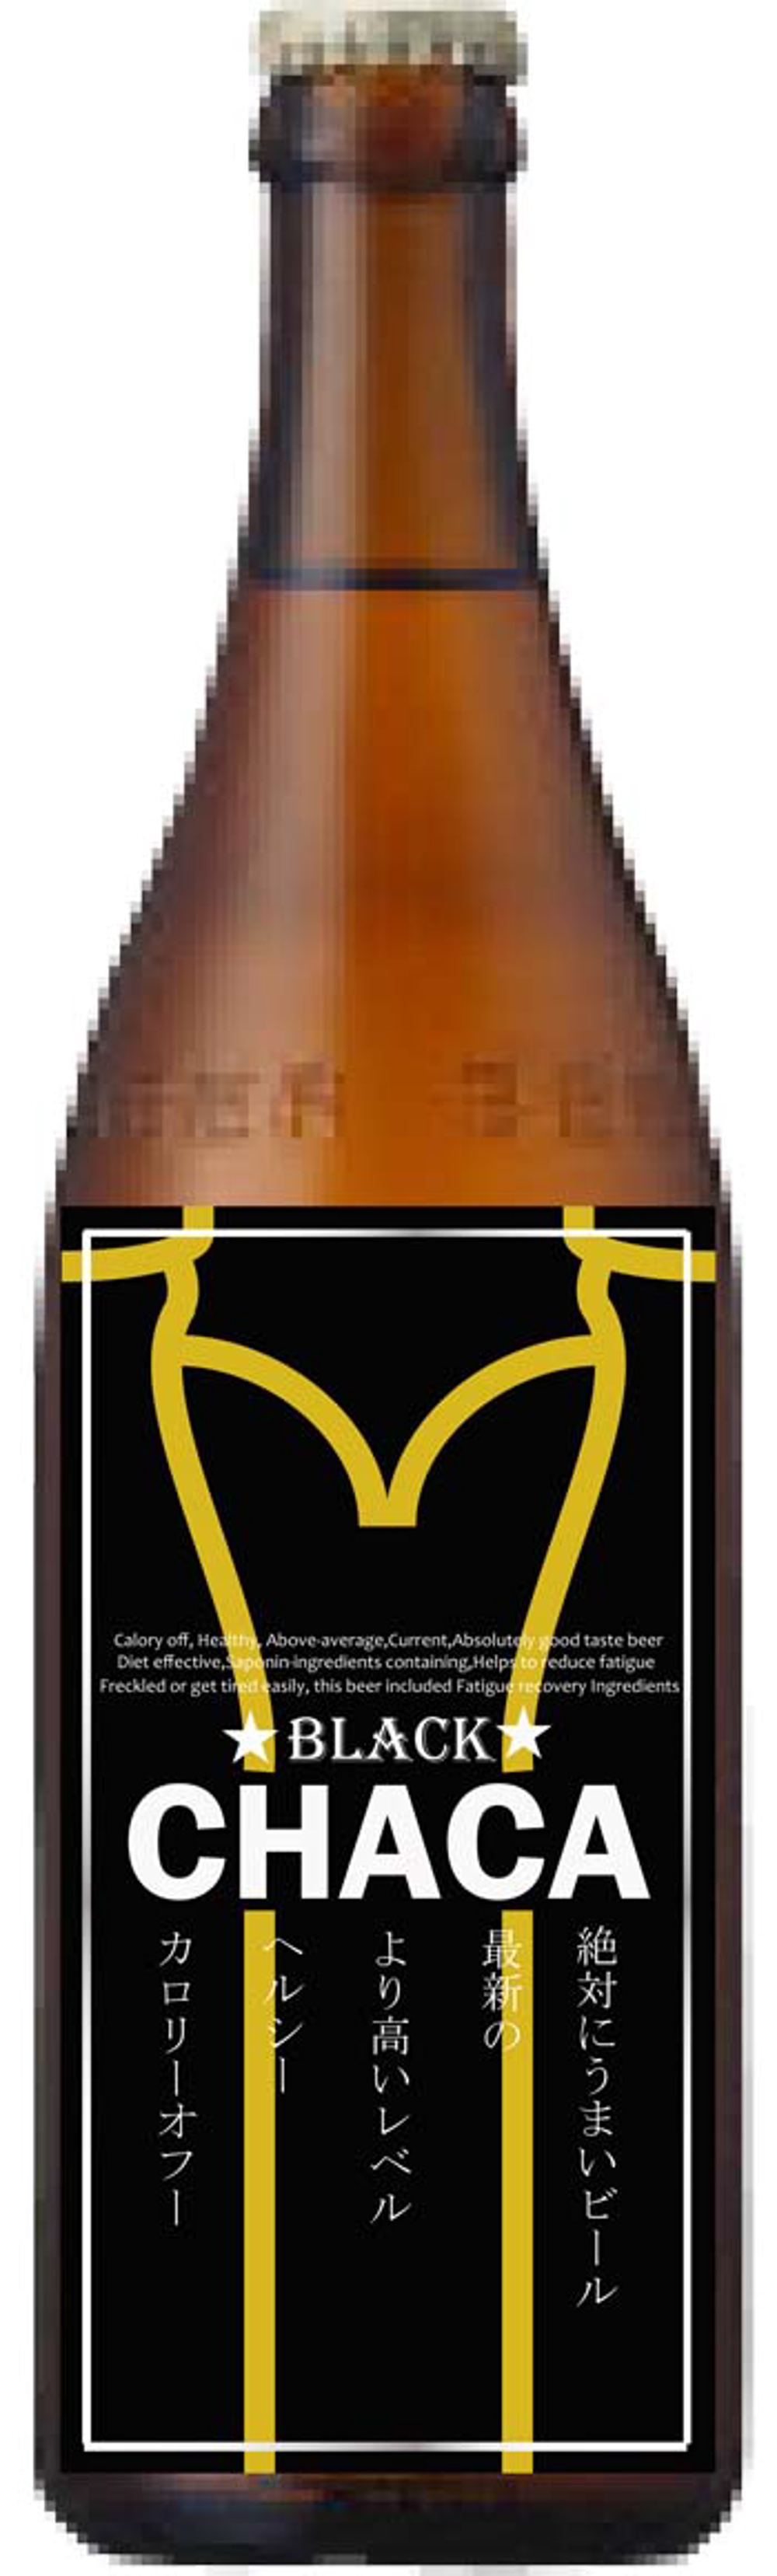 地ビールの商品名のデザイン